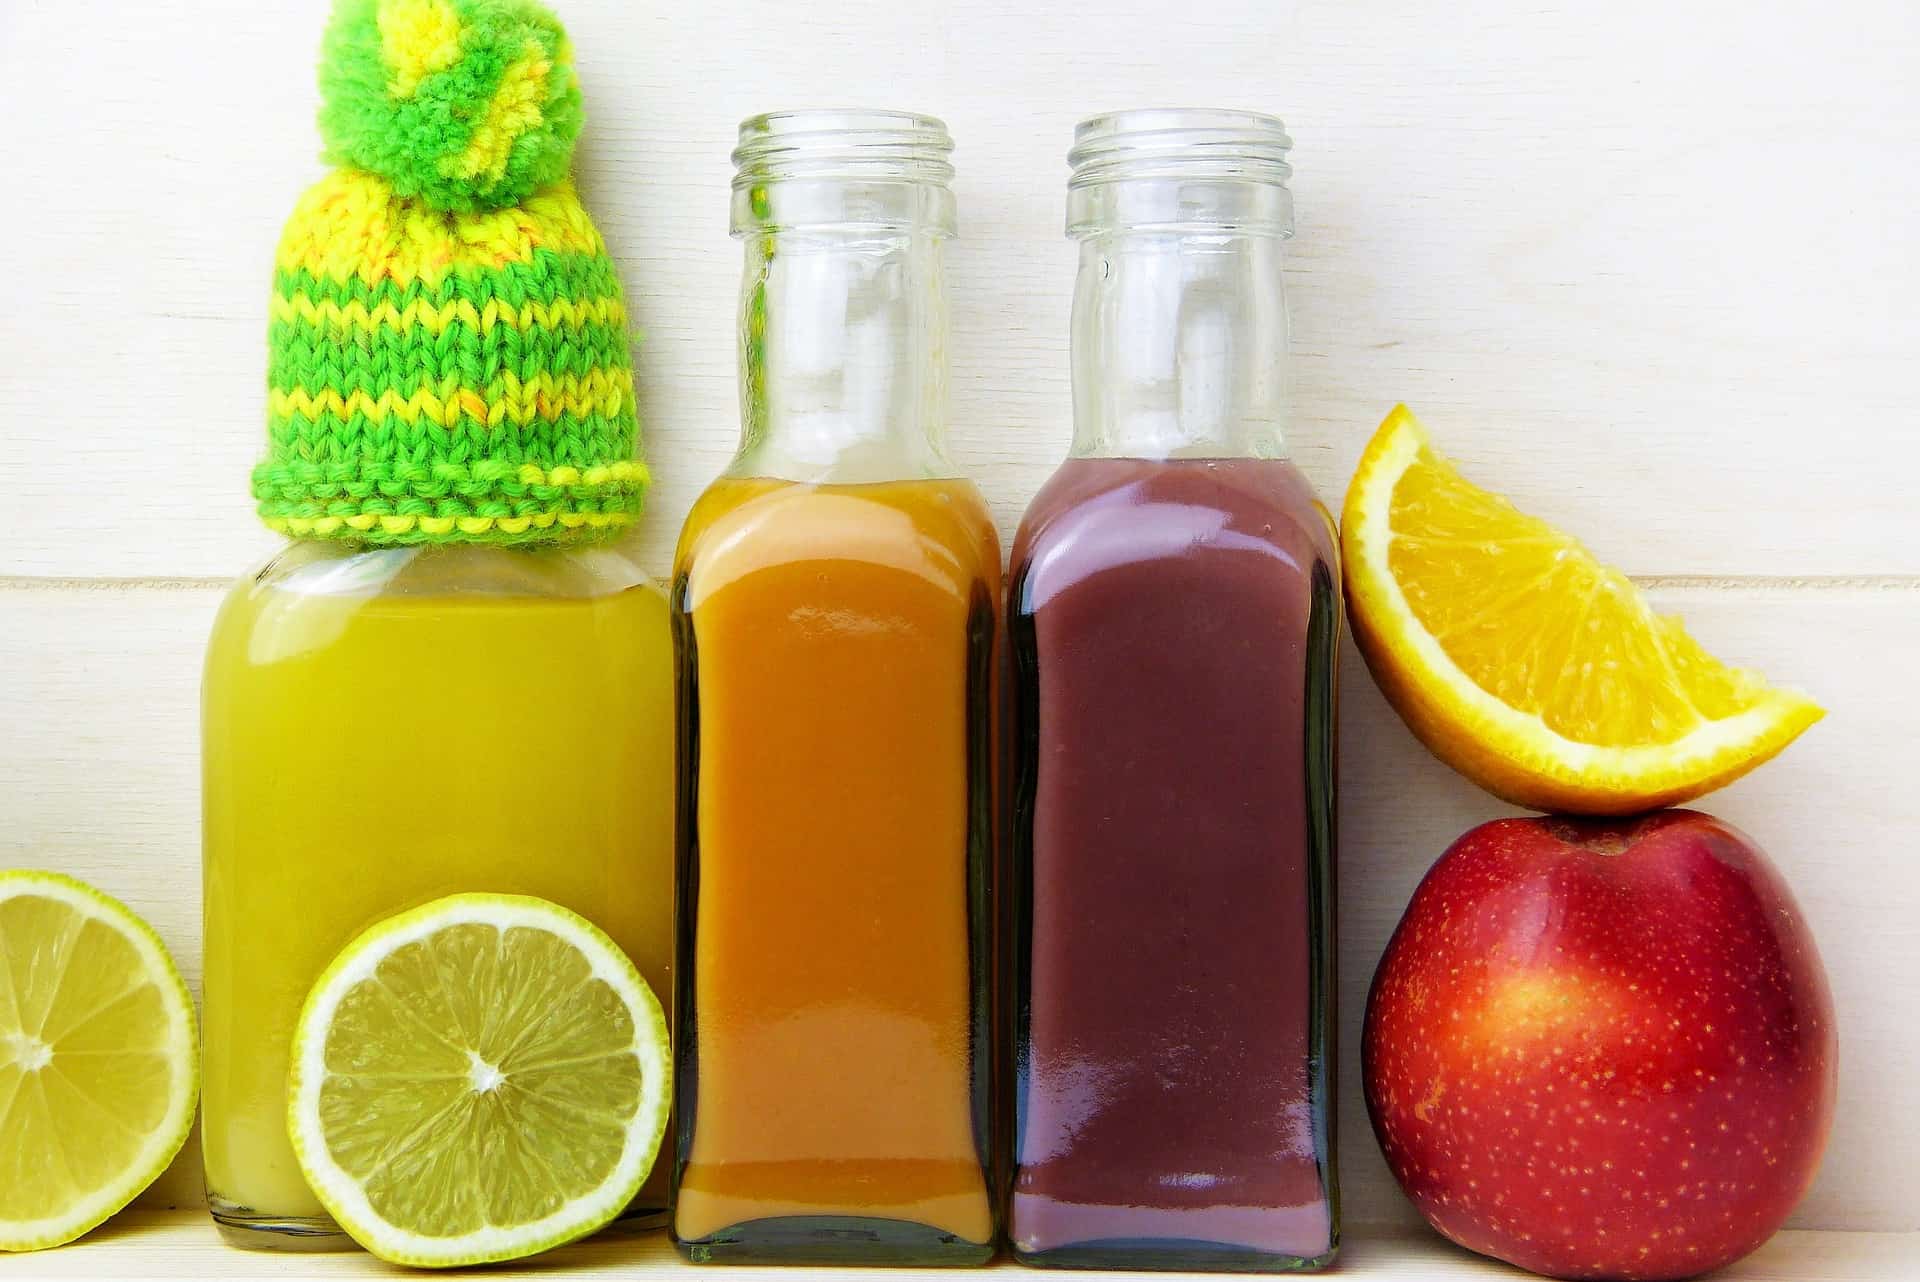 شرب عصير الفاكهة كل يوم ليس بالضرورة صحيًا. لماذا هذا؟